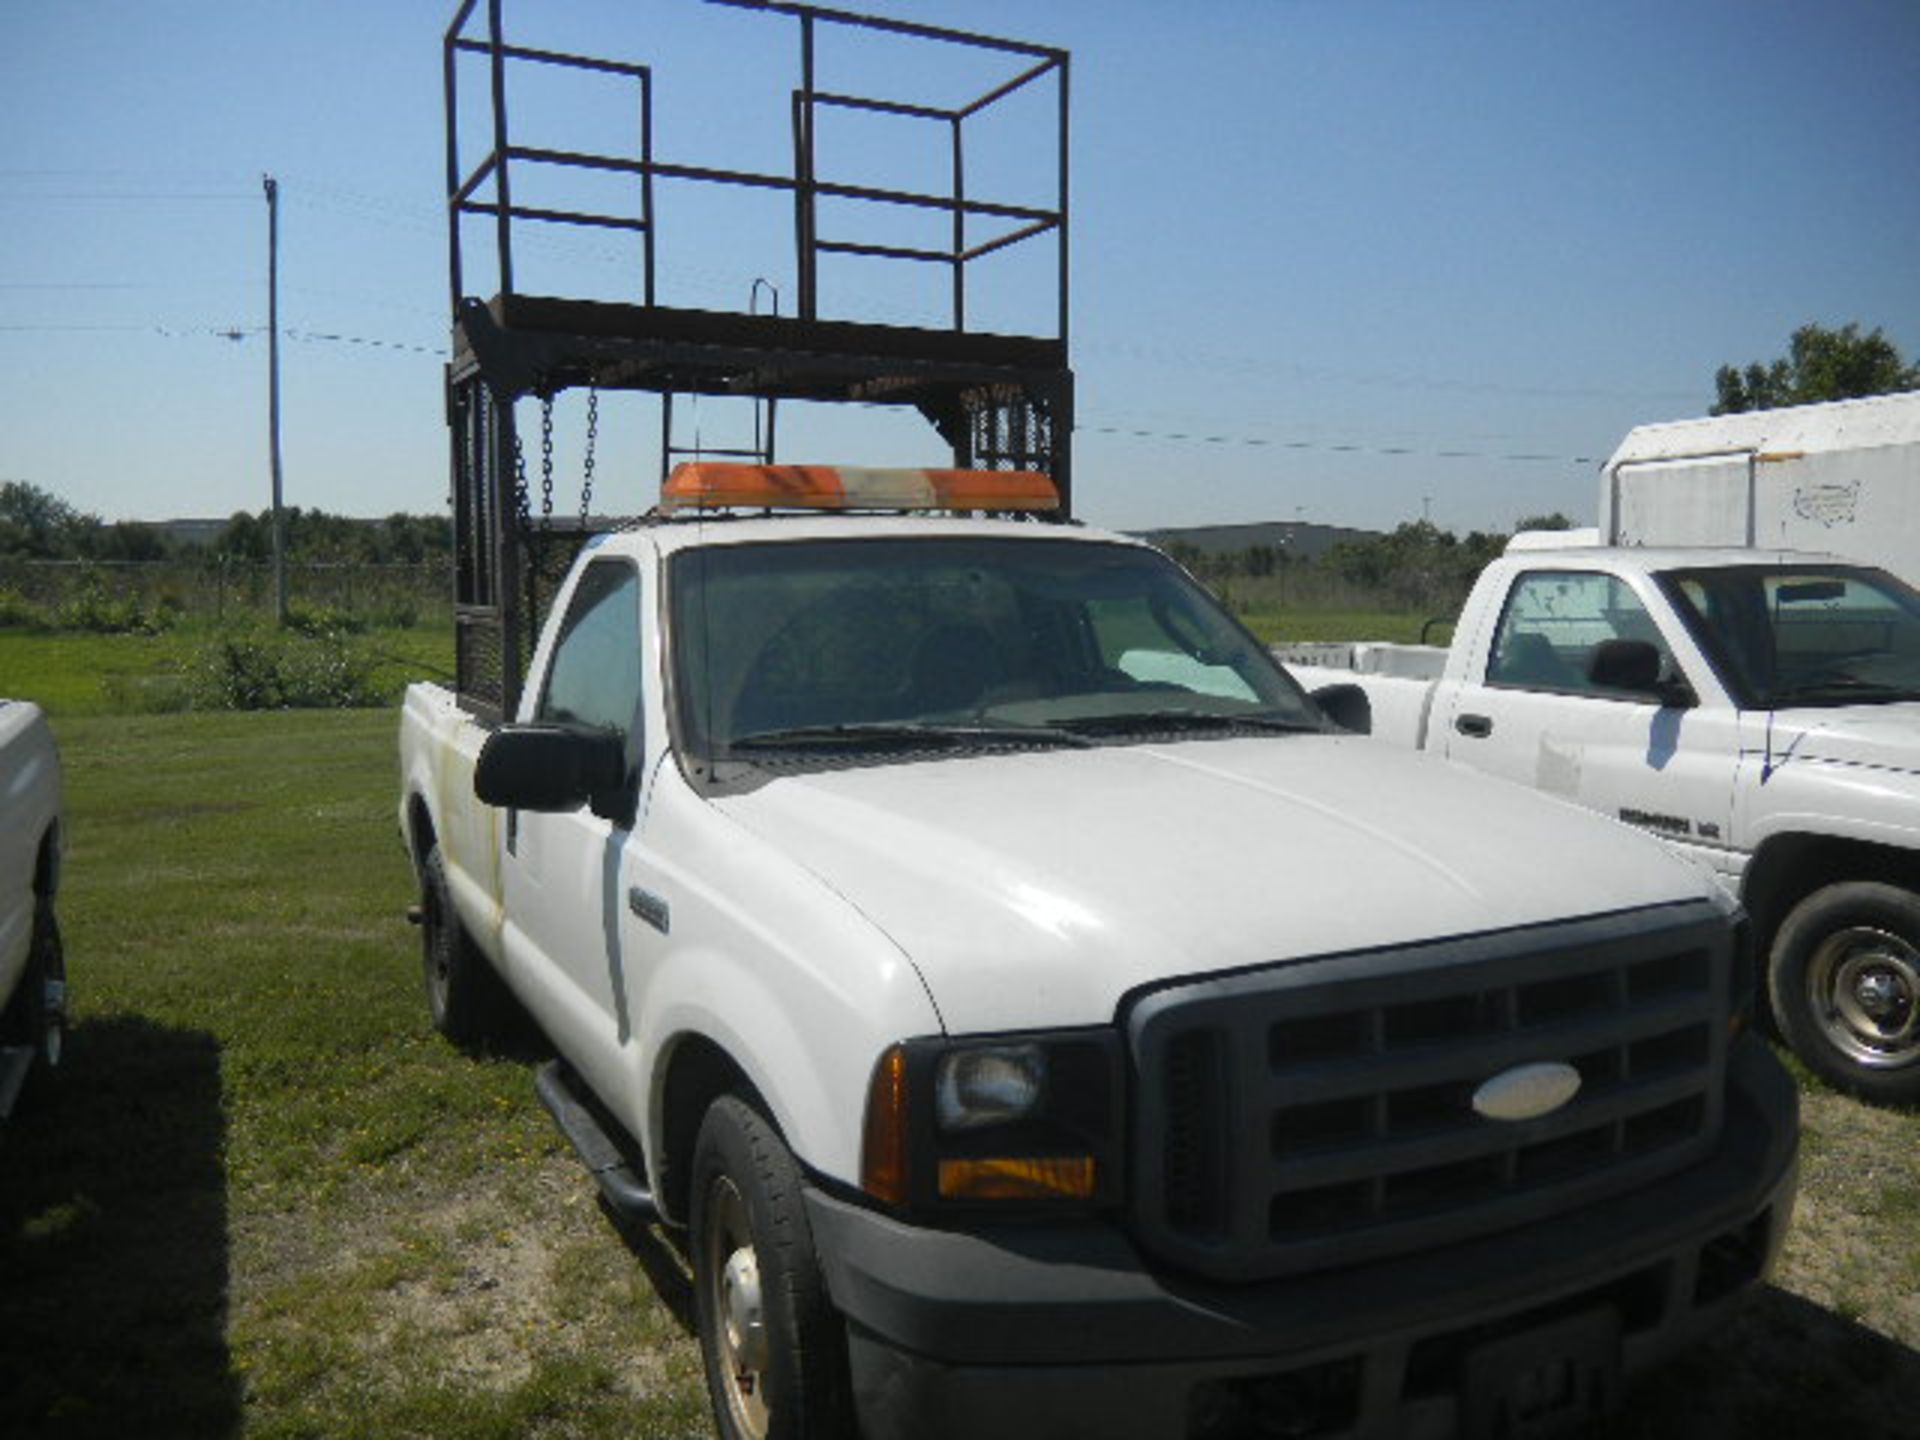 2006 Ford F250 "Sign Truck" With Metal Rack & Compressor - Asset I.D. #945 - Last of Vin (D90999)